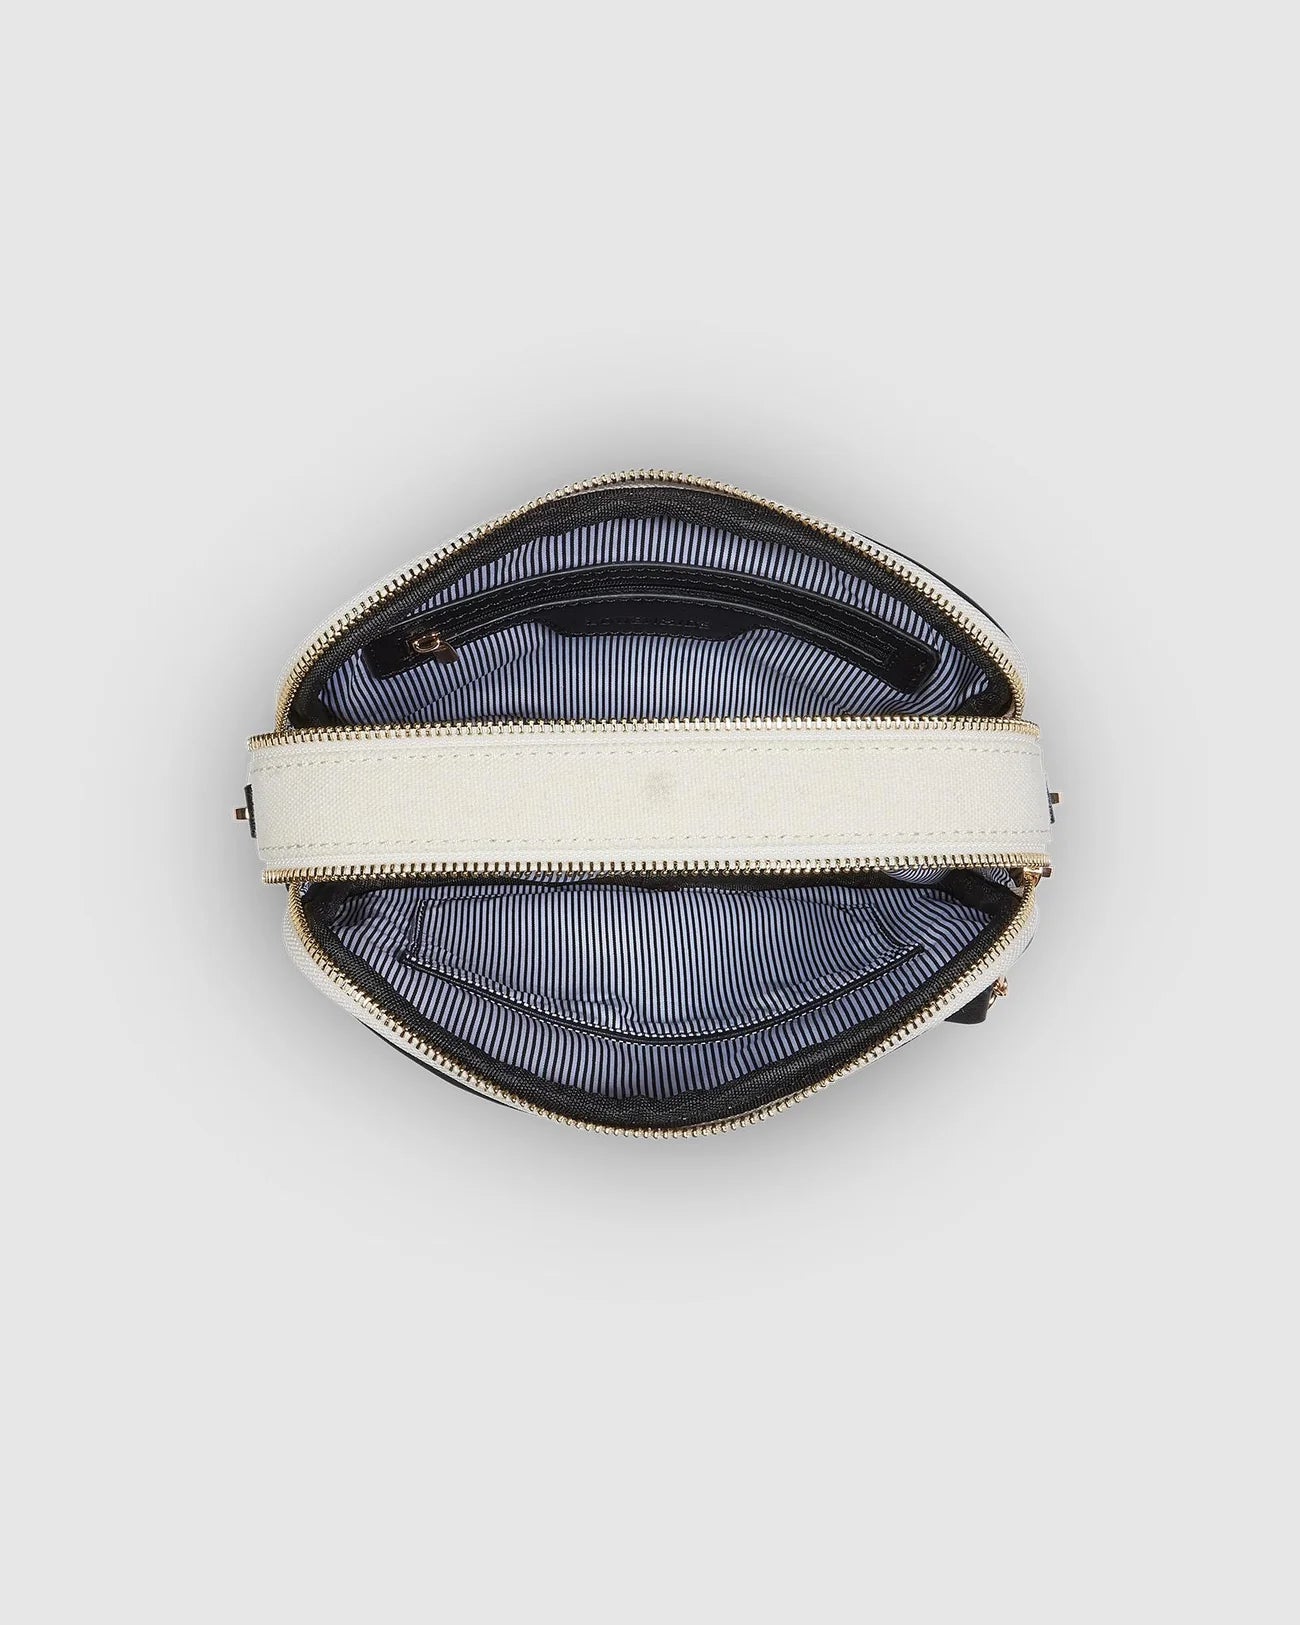 Jolene Canvas Crossbody Bag (Cream Black) - Something For Me​​